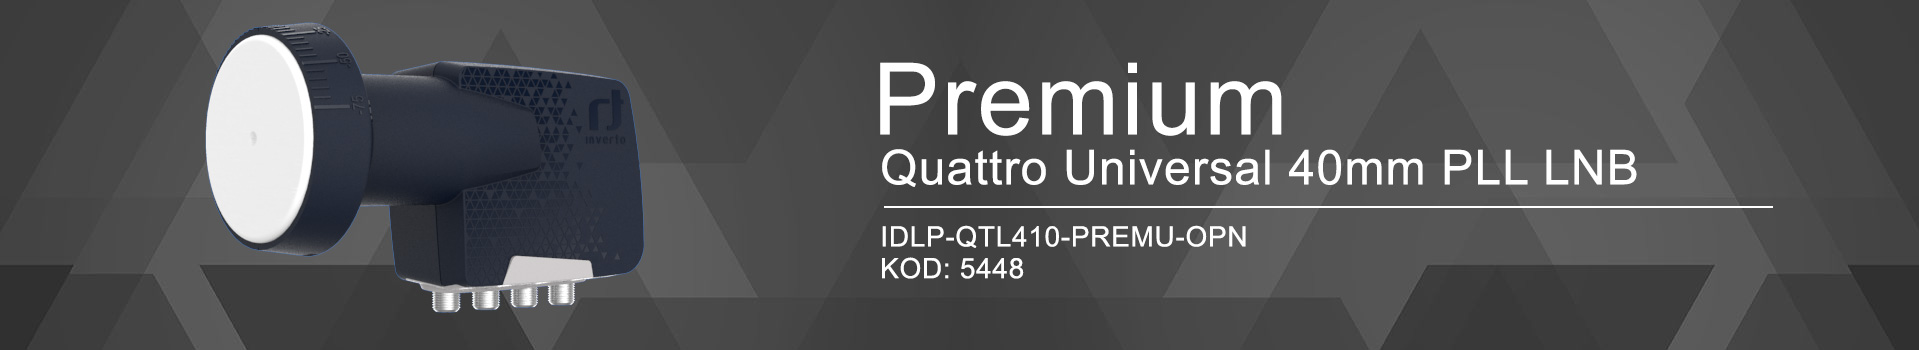 konwerter satelitarny Inverto Quattro Premium IDLP-QTL410-PREMU-OPN